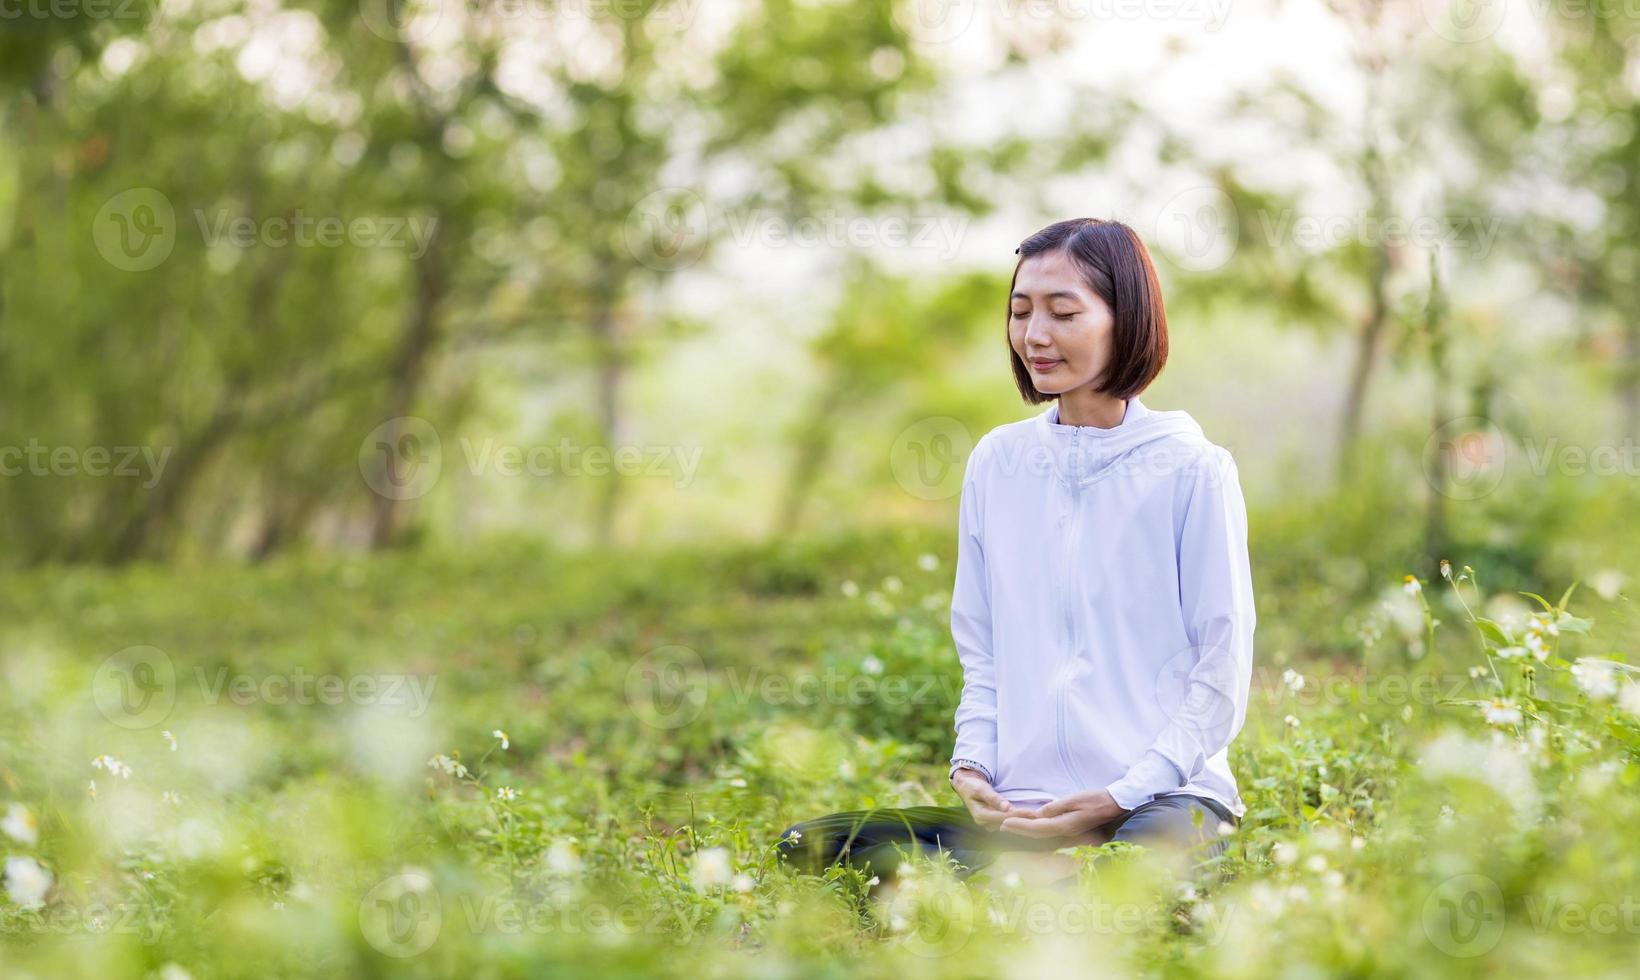 asiático mujer es relajantemente practicando meditación yoga en bosque lleno de margarita flor en verano a alcanzar felicidad desde interior paz sabiduría con Mañana ligero para sano mente y alma concepto foto